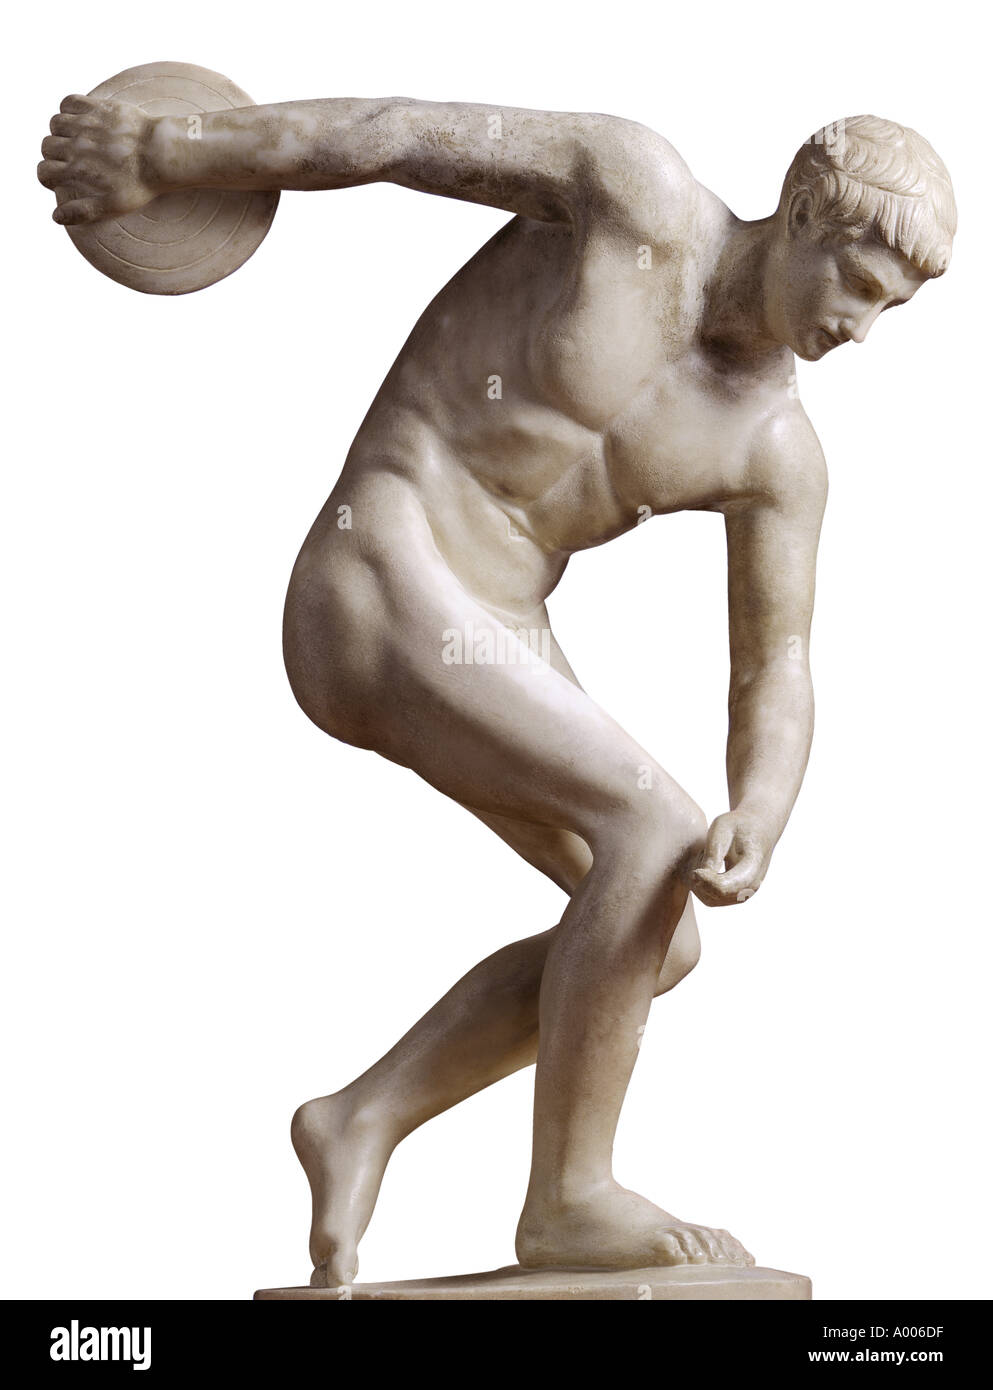 Statua di Pietra della discus thrower Foto Stock